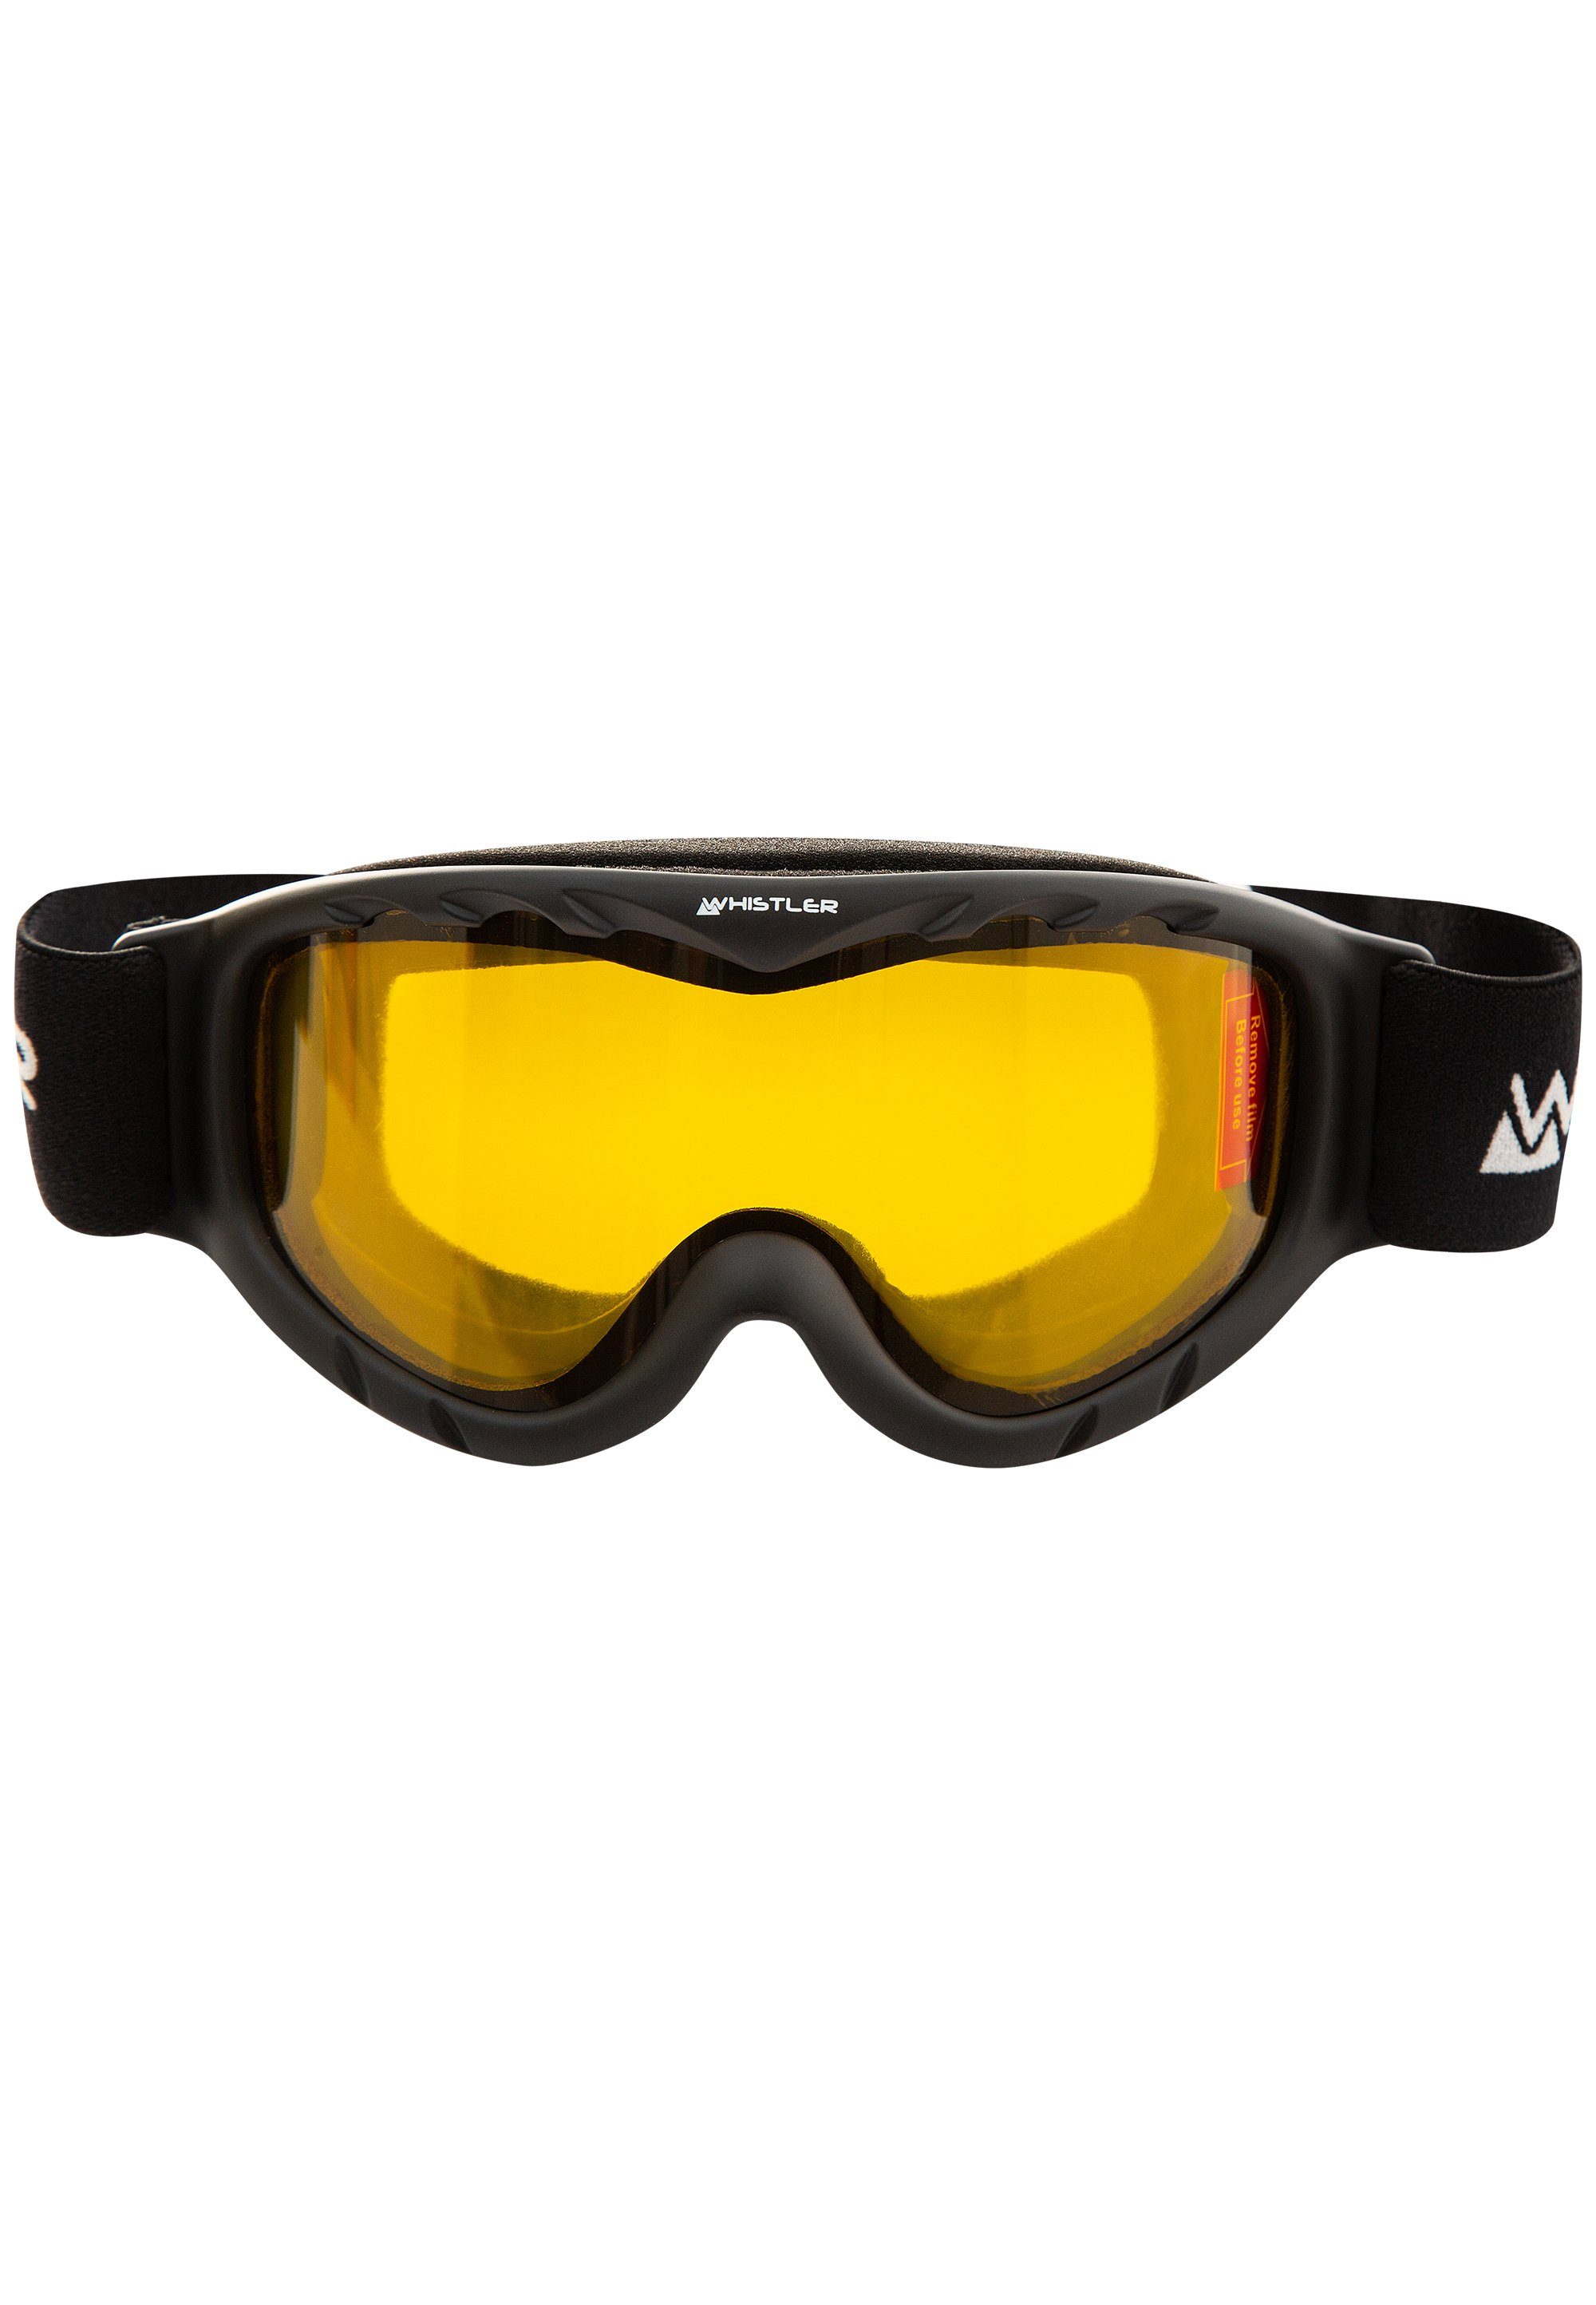 Ski Anti-Fog-Beschichtung Jr. Goggle, WS300 Skibrille WHISTLER mit